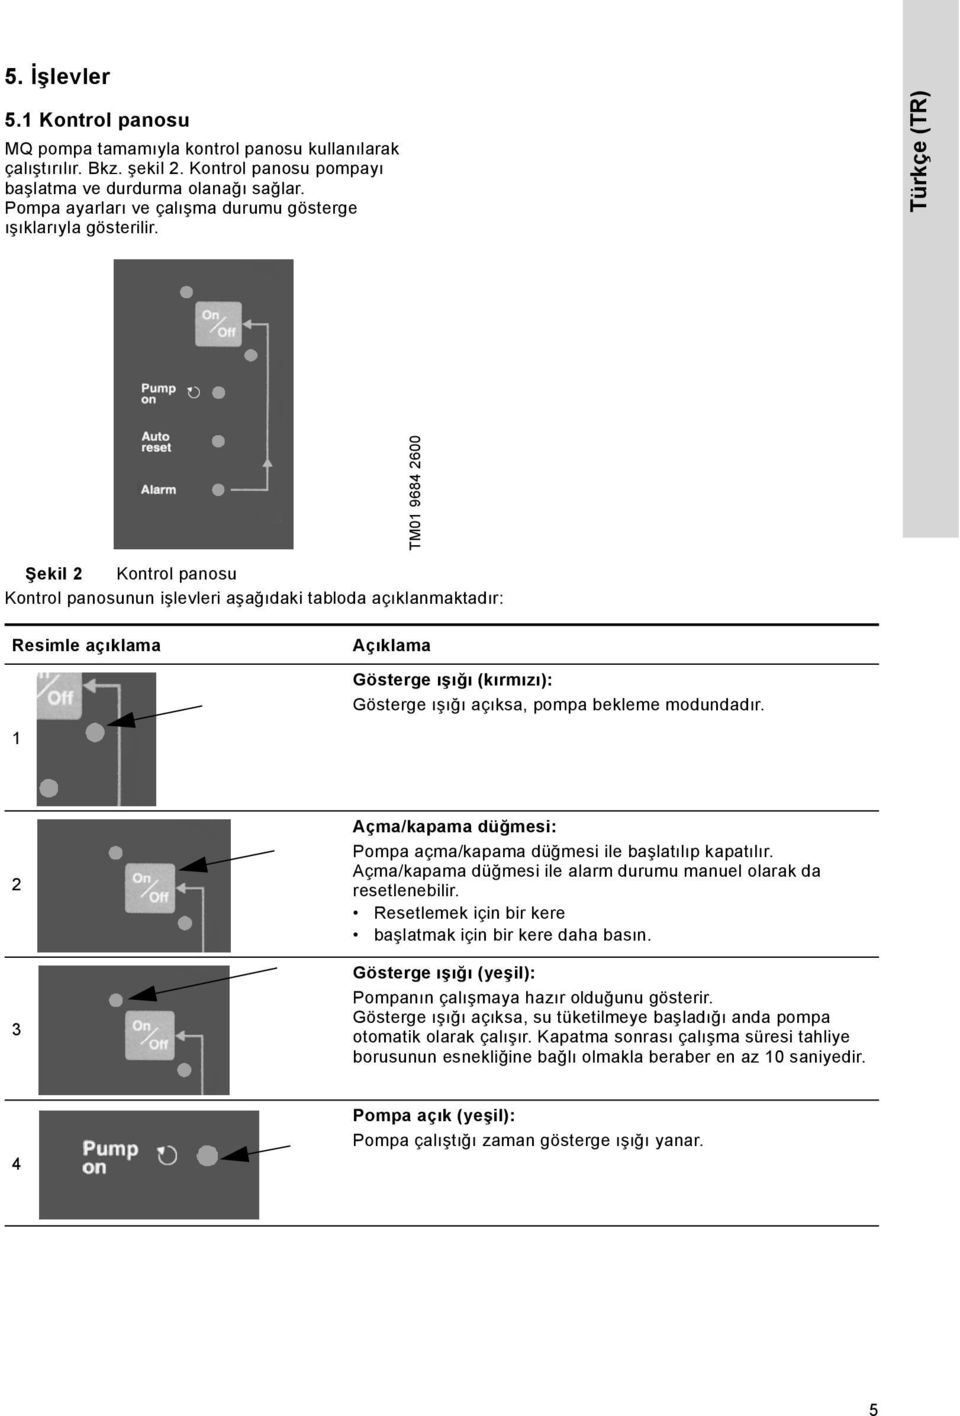 Türkçe (TR) TM01 9684 2600 Şekil 2 Kontrol panosu Kontrol panosunun işlevleri aşağıdaki tabloda açıklanmaktadır: Resimle açıklama Açıklama Gösterge ışığı (kırmızı): Gösterge ışığı açıksa, pompa